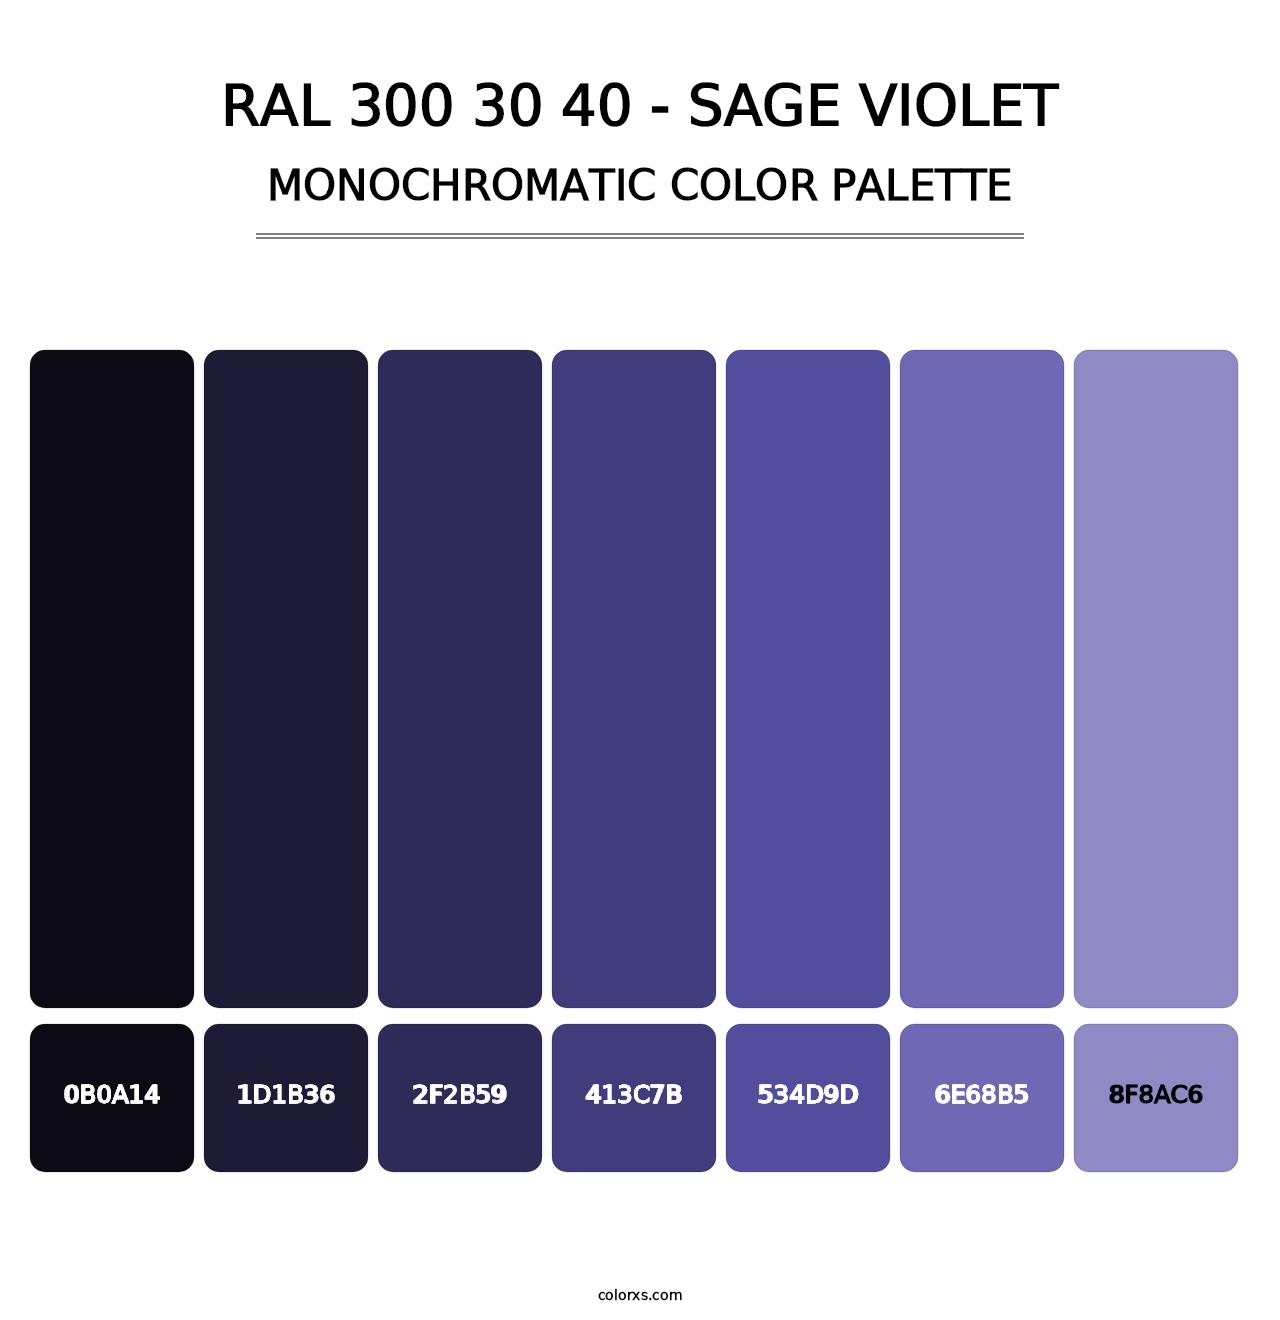 RAL 300 30 40 - Sage Violet - Monochromatic Color Palette